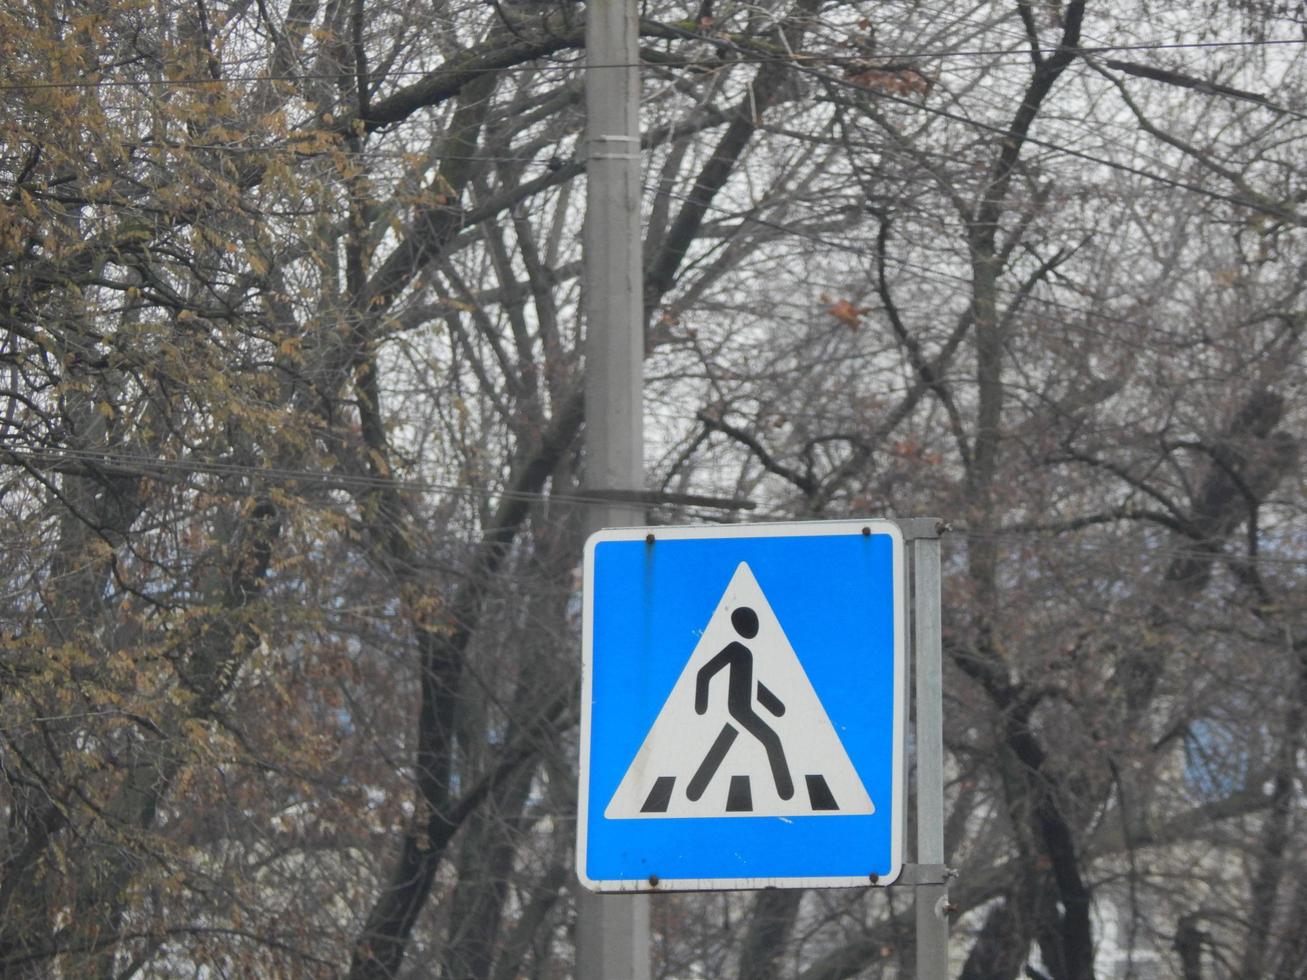 señales de tráfico que indican la dirección del movimiento de automóviles y peatones foto